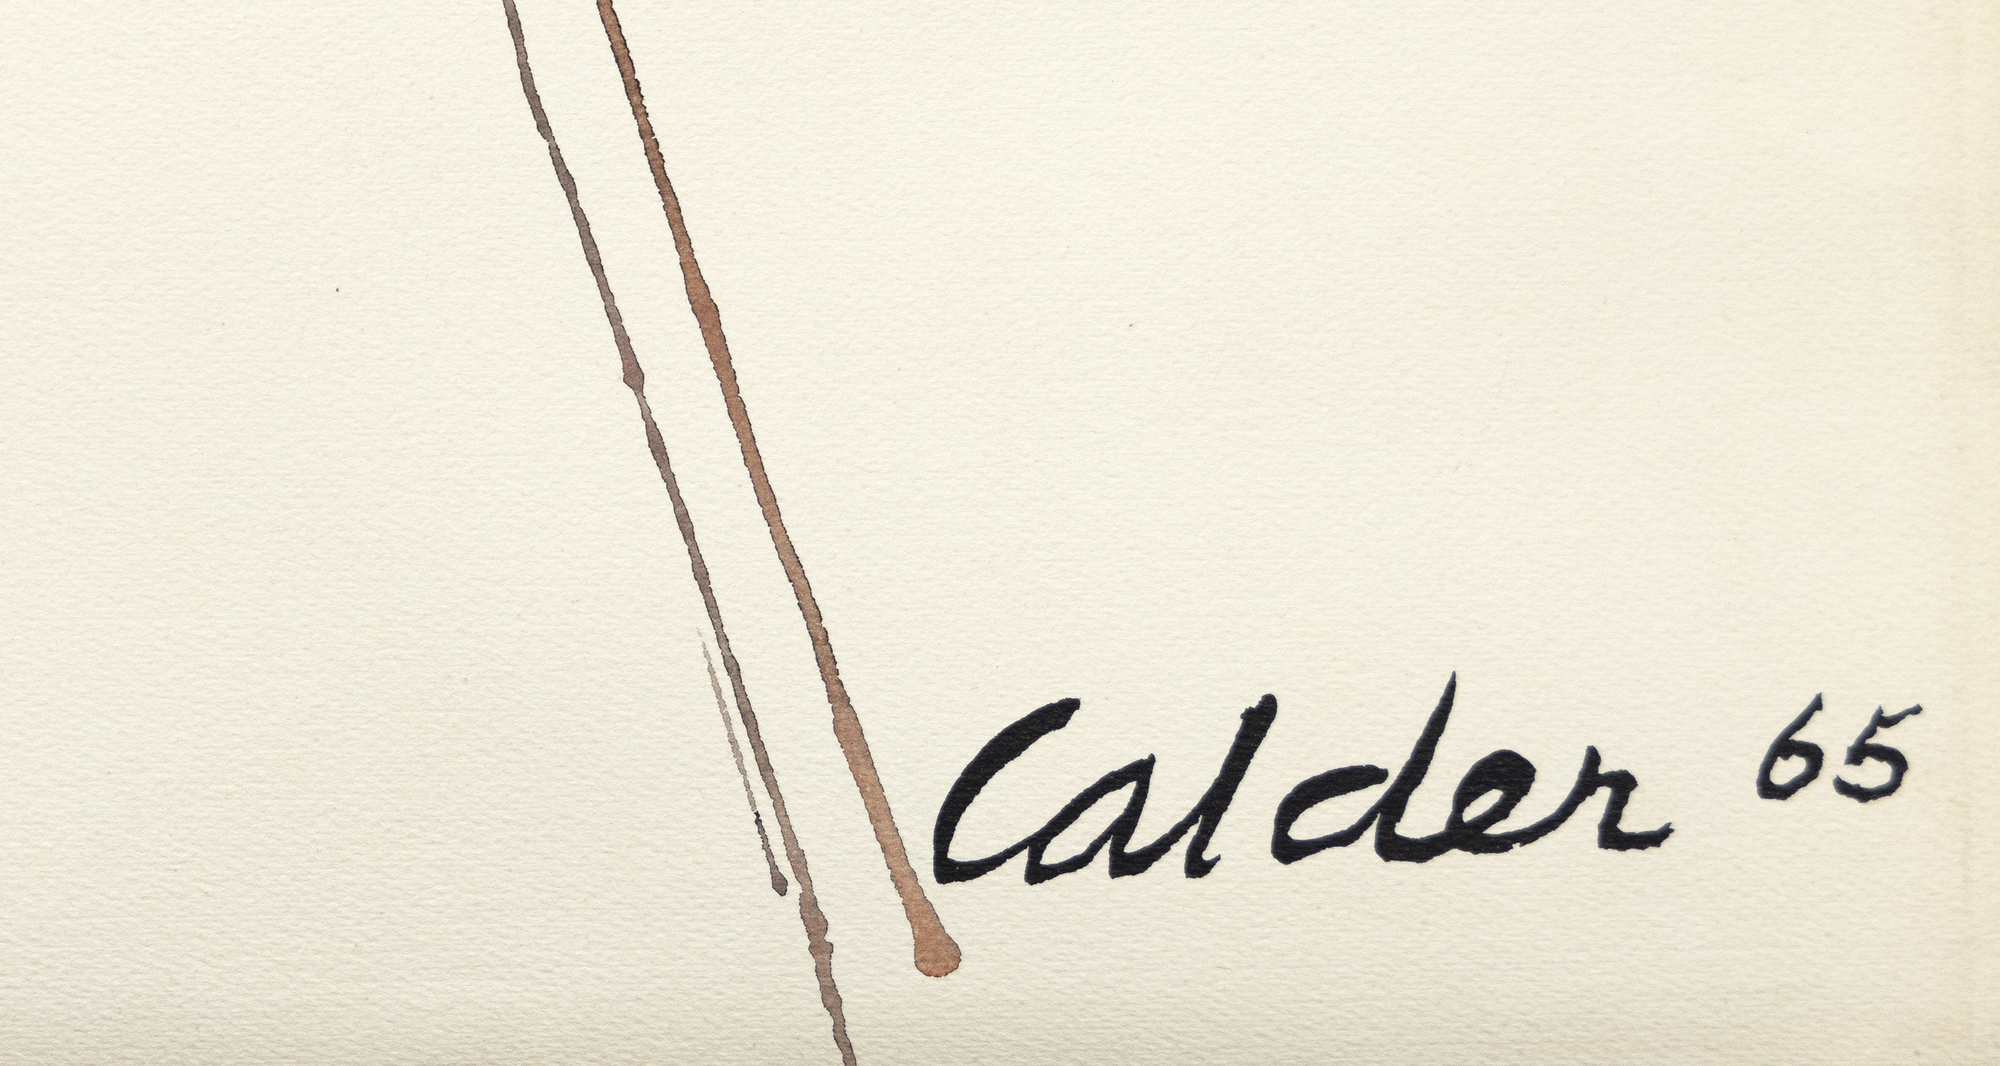 亚历山大-考尔德（Alexander Calder）的水粉画作品 &quot;Wigwam rouge et jaune &quot;是对设计和色彩的生动探索。这幅画的构图以对角线格为主，对角线在顶点附近相交，呈现出一种动态平衡。考尔德用红色和黄色的菱形引入了奇思妙想的元素，为作品注入了童趣，营造出节日的气氛。右倾线条顶点的红色小球唤起了人们的奇思妙想，而左倾线条顶端的灰色小球则提供了对比和平衡。考尔德巧妙地将简洁和重要的设计元素融合在一起，使 Wigwam rouge et jaune 成为一种视觉享受。